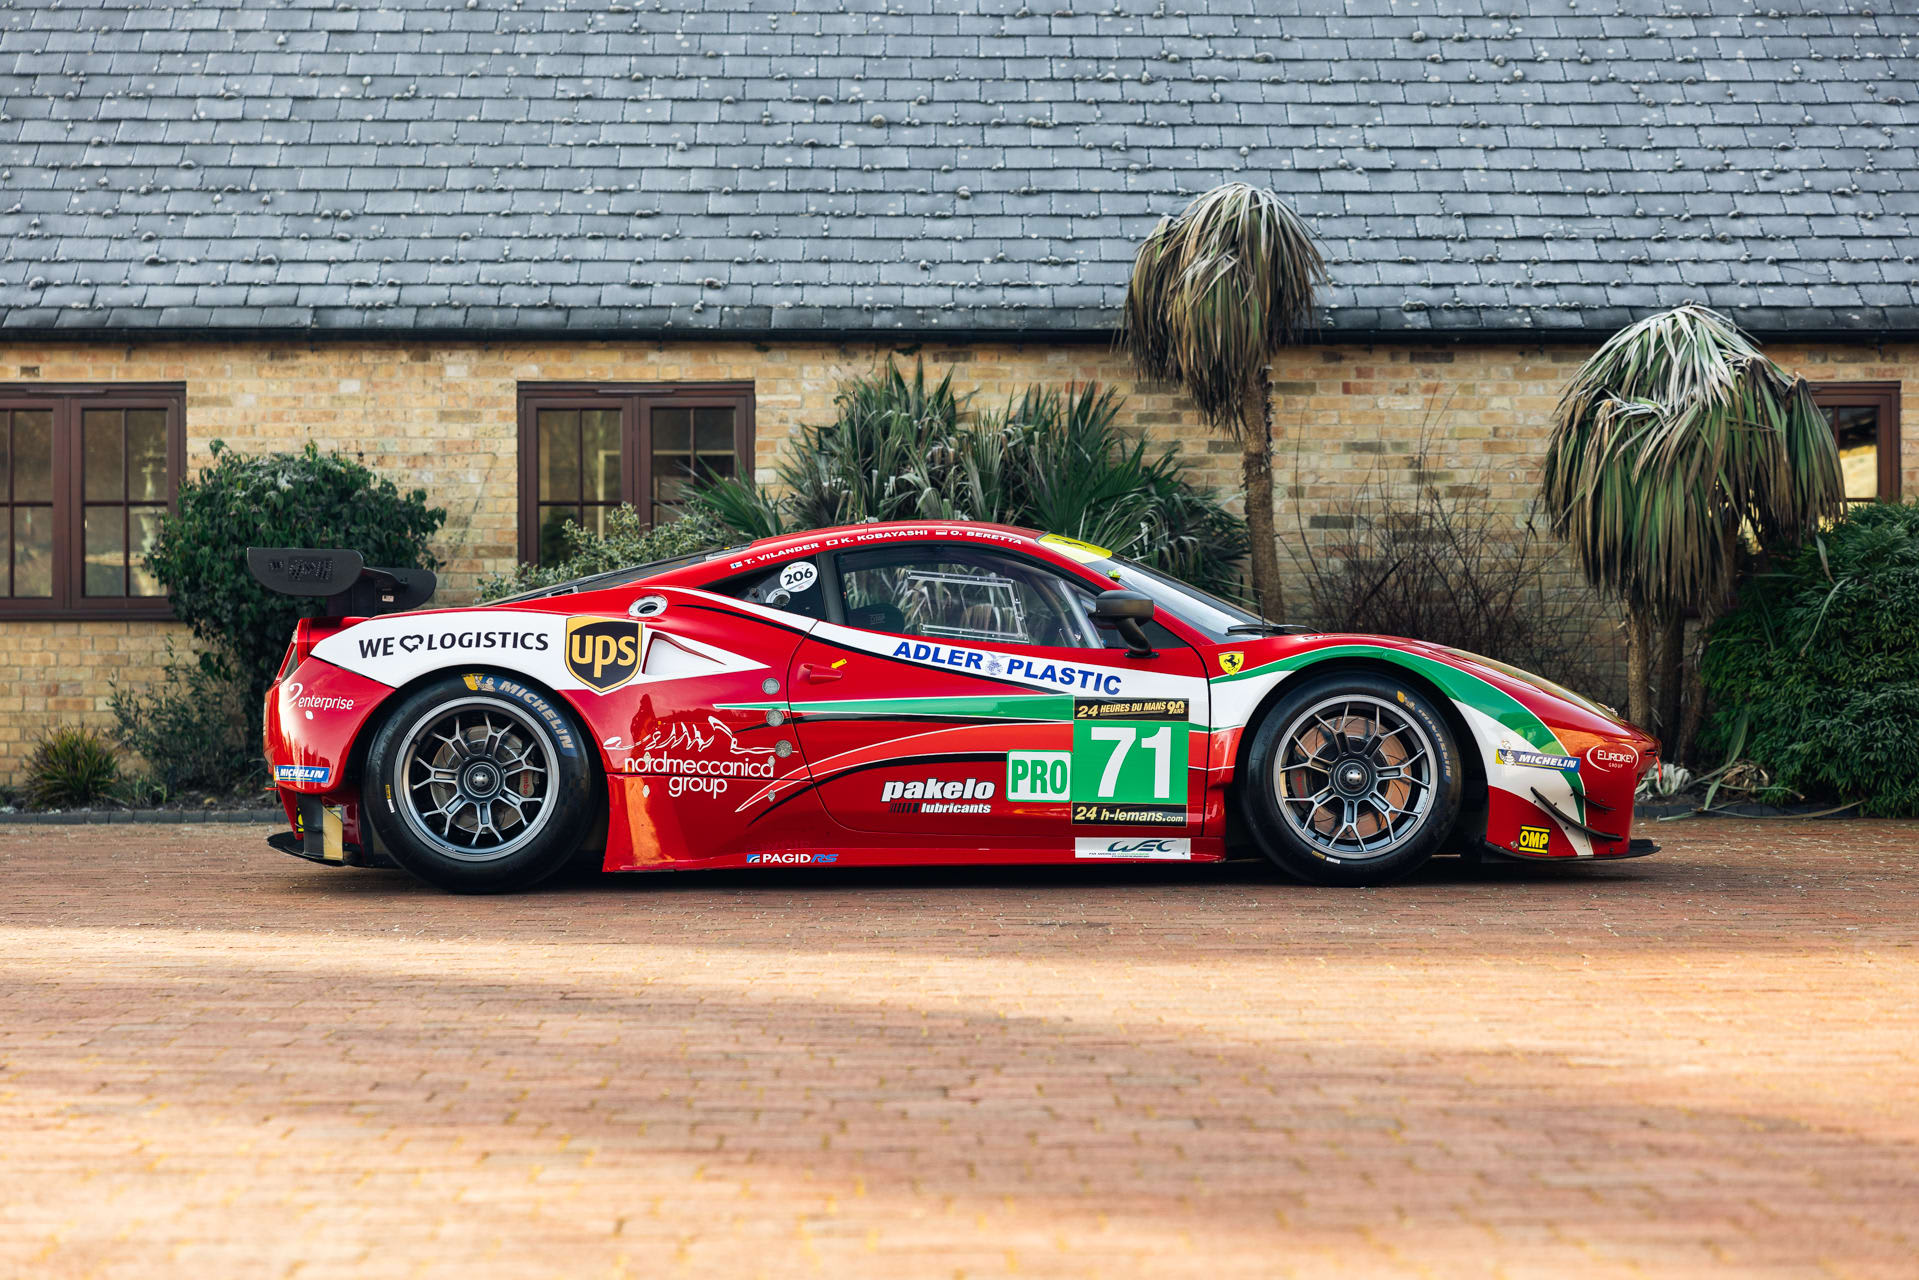 2013 Ferrari 458 Italia GTE | Girardo & Co